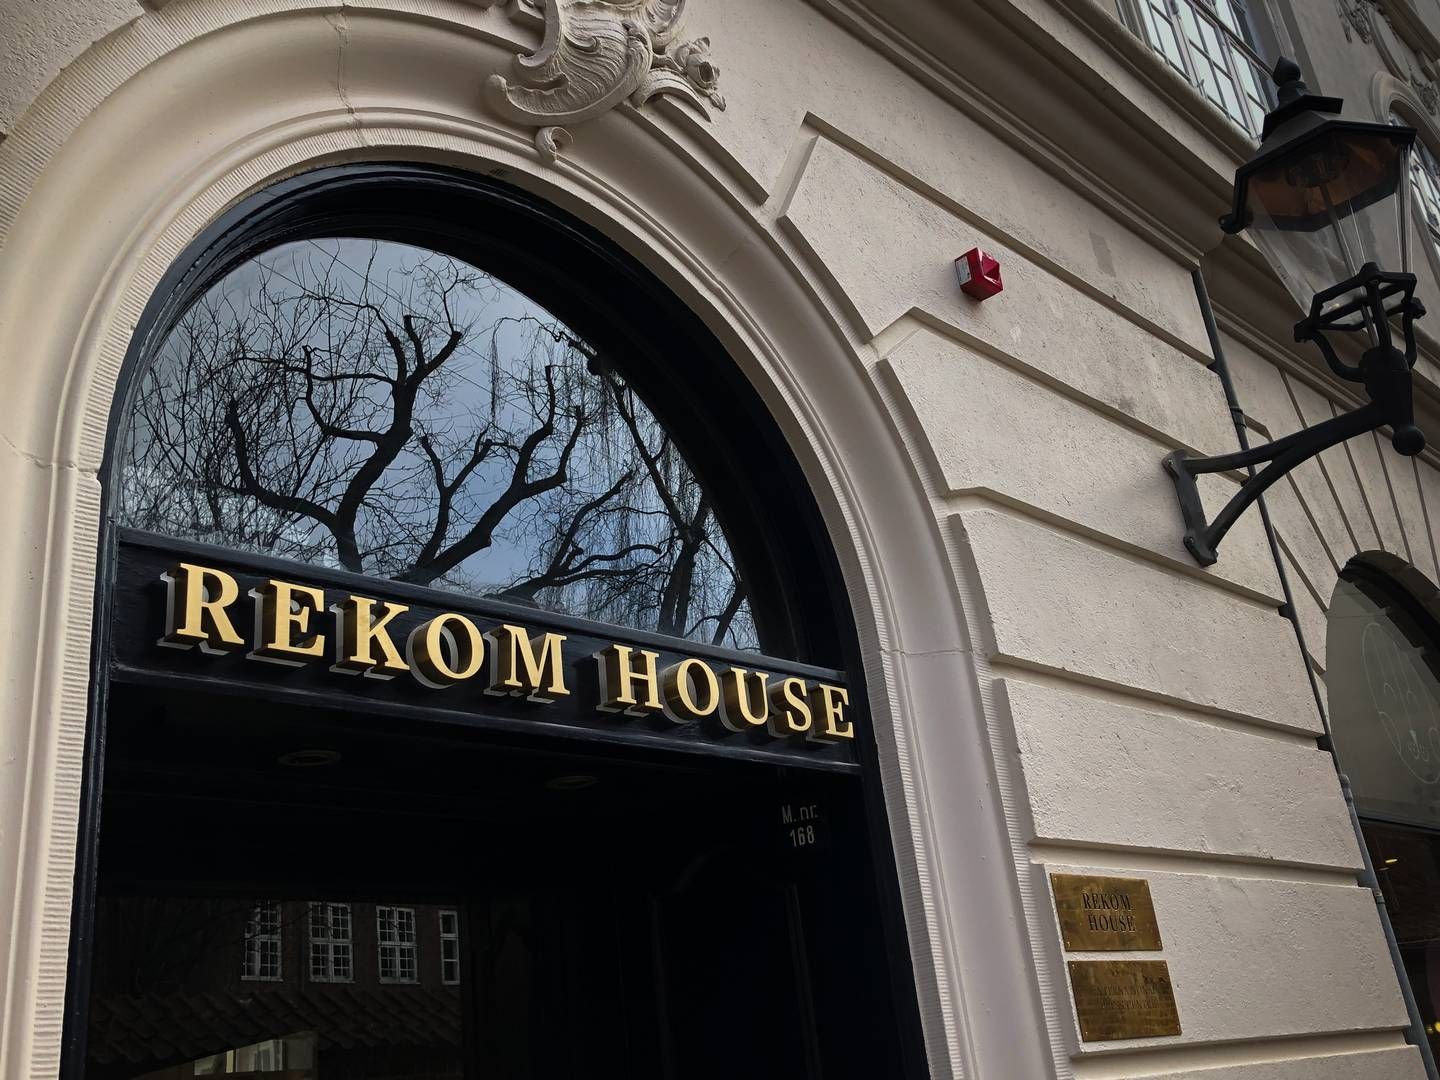 Oven i ansættelsen af den nye franchisedirektør varsler Rekom Group også et nyt franchisekoncept til offentliggørelse i slutningen af januar. | Foto: Peter Thomsen / Watch Medier